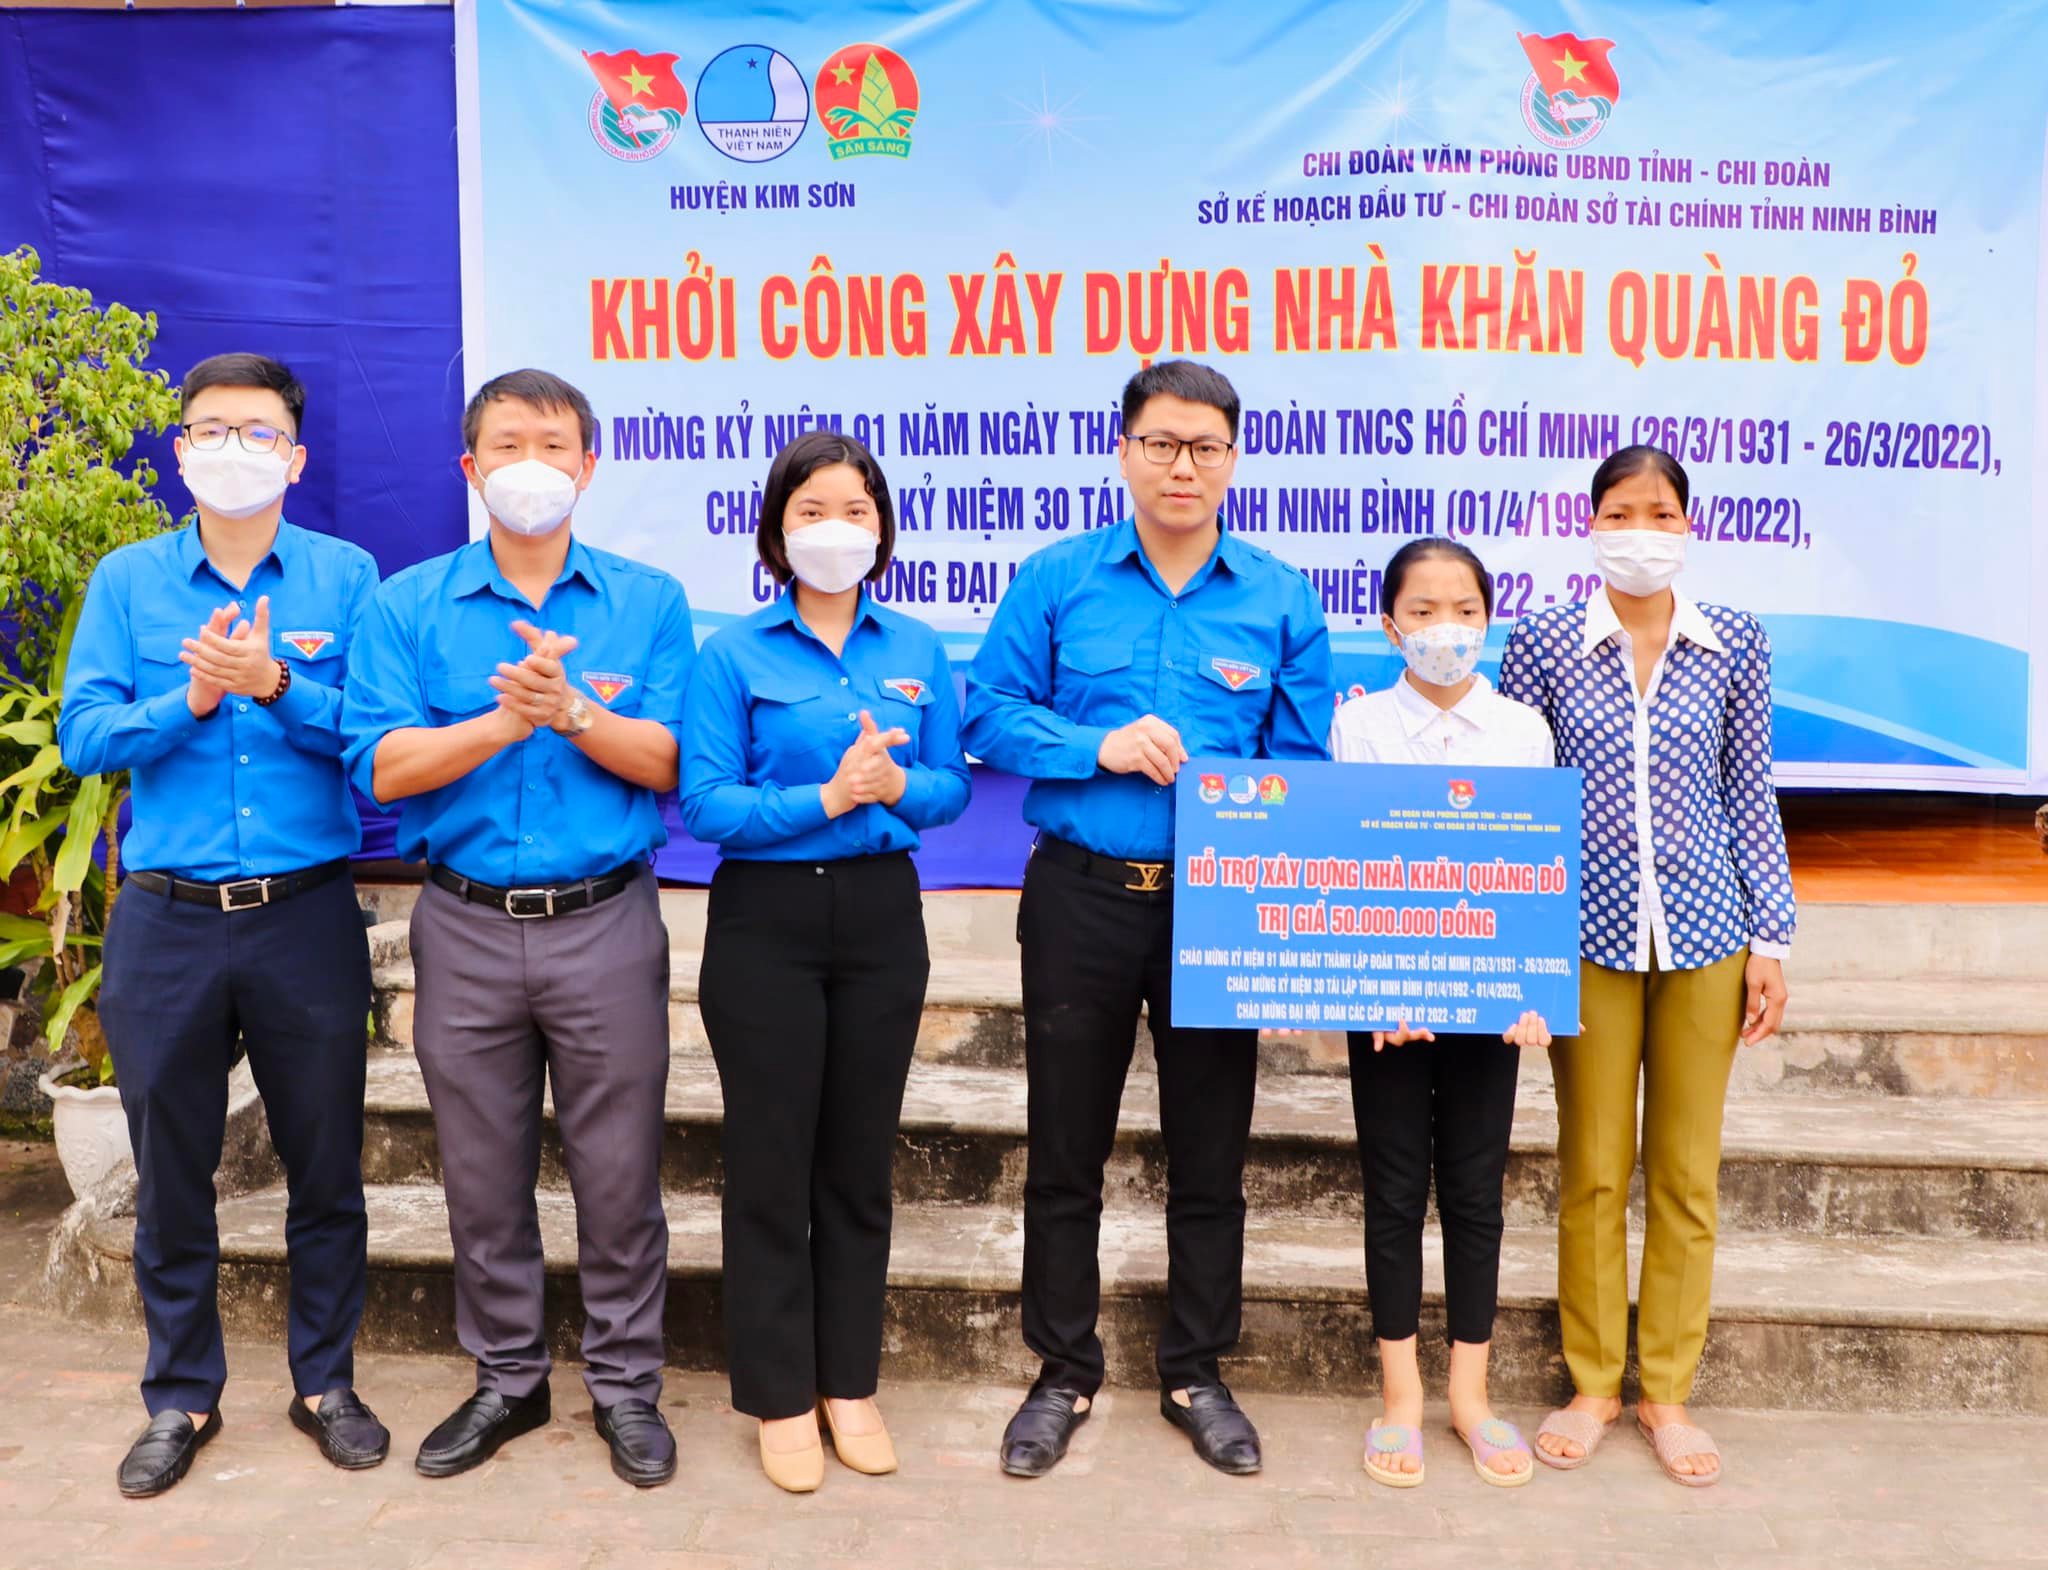 Huyện đoàn Kim Sơn định hướng cho thiếu nhi thực hiện công trình “Ngôi nhà Khăn quàng đỏ” chào mừng Đại hội đại biểu Đoàn Thanh niên Cộng sản Hồ Chí Minh tỉnh Ninh Bình lần thứ XIV, nhiệm kỳ 2022 - 2027